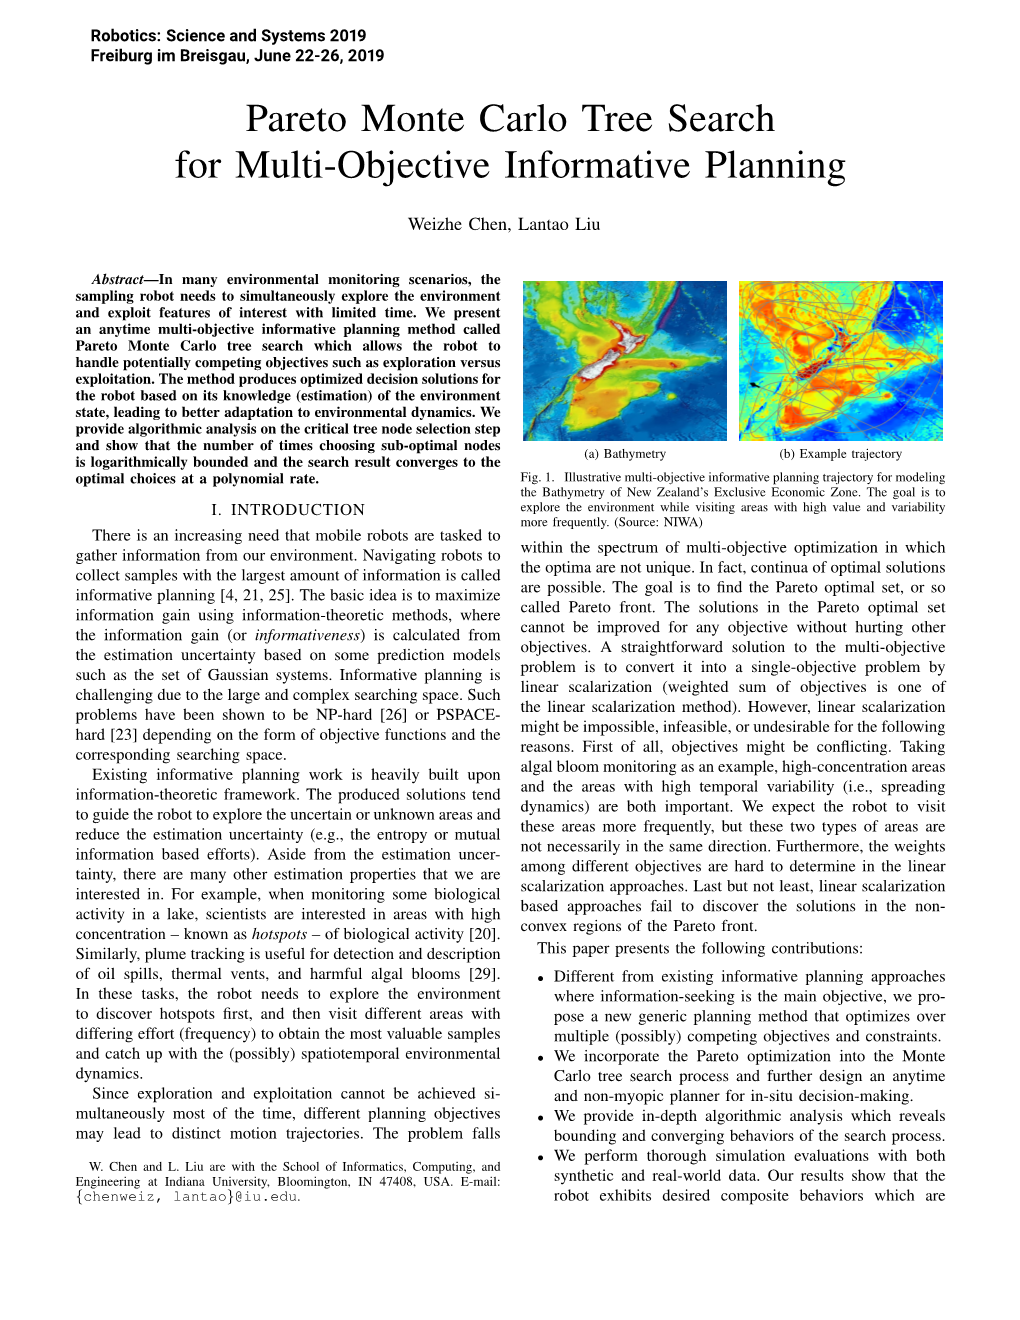 Pareto Monte Carlo Tree Search for Multi-Objective Informative Planning